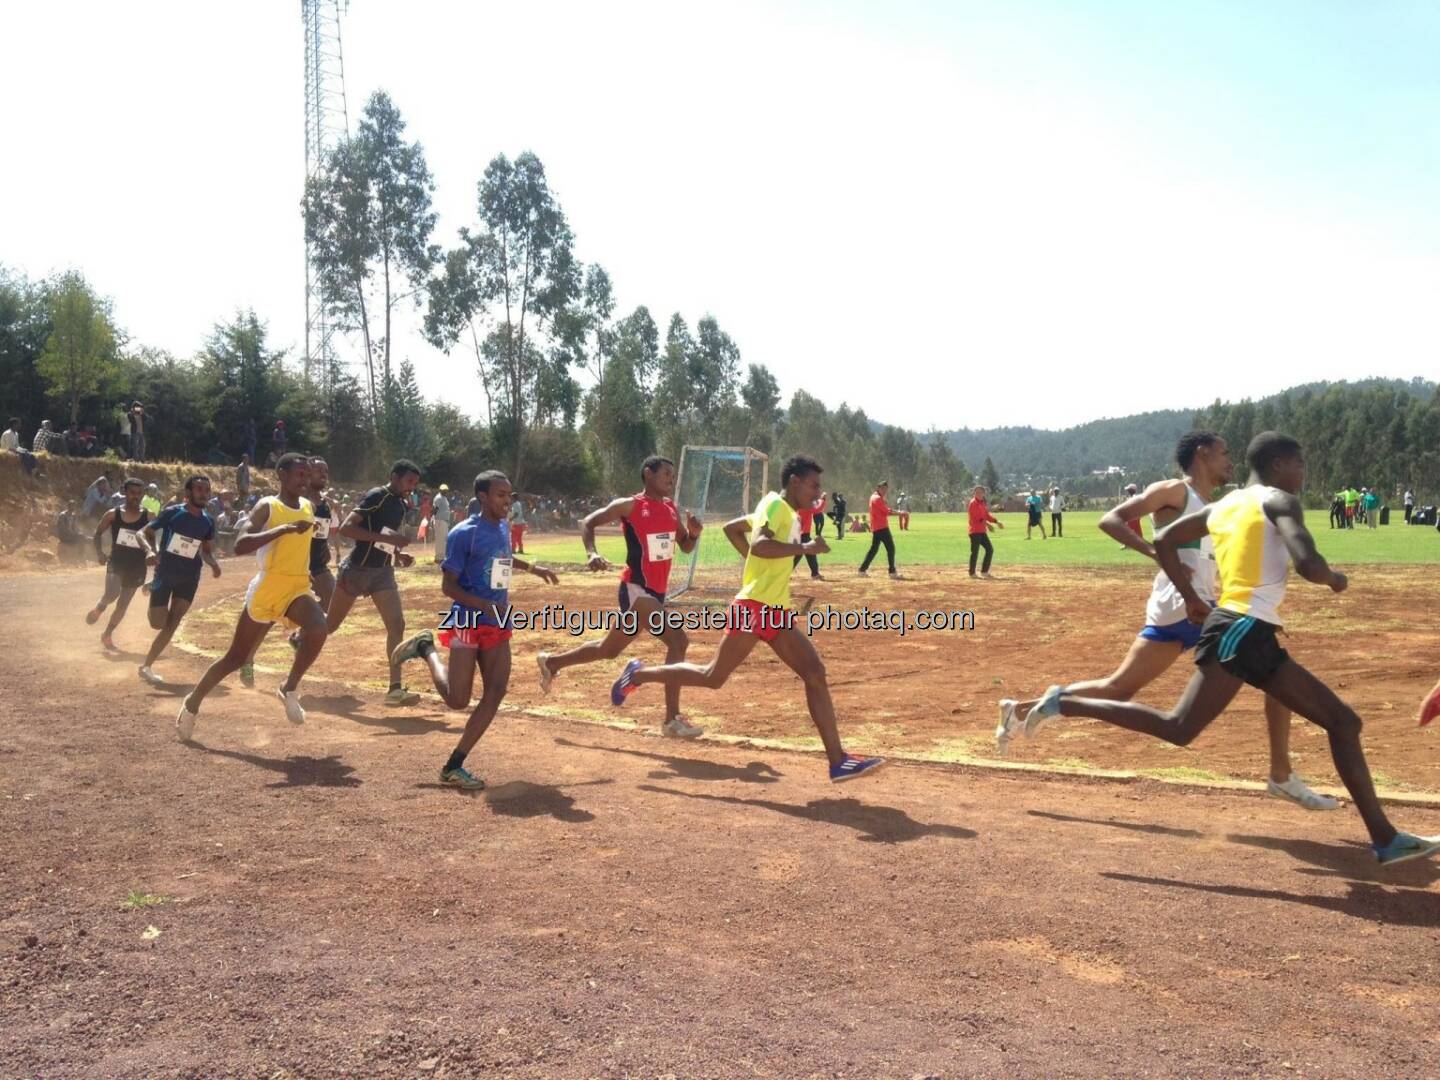 laufen, Rennen, track and field, Tartan, Äthiopien, hintereinander, Laufschritt, 